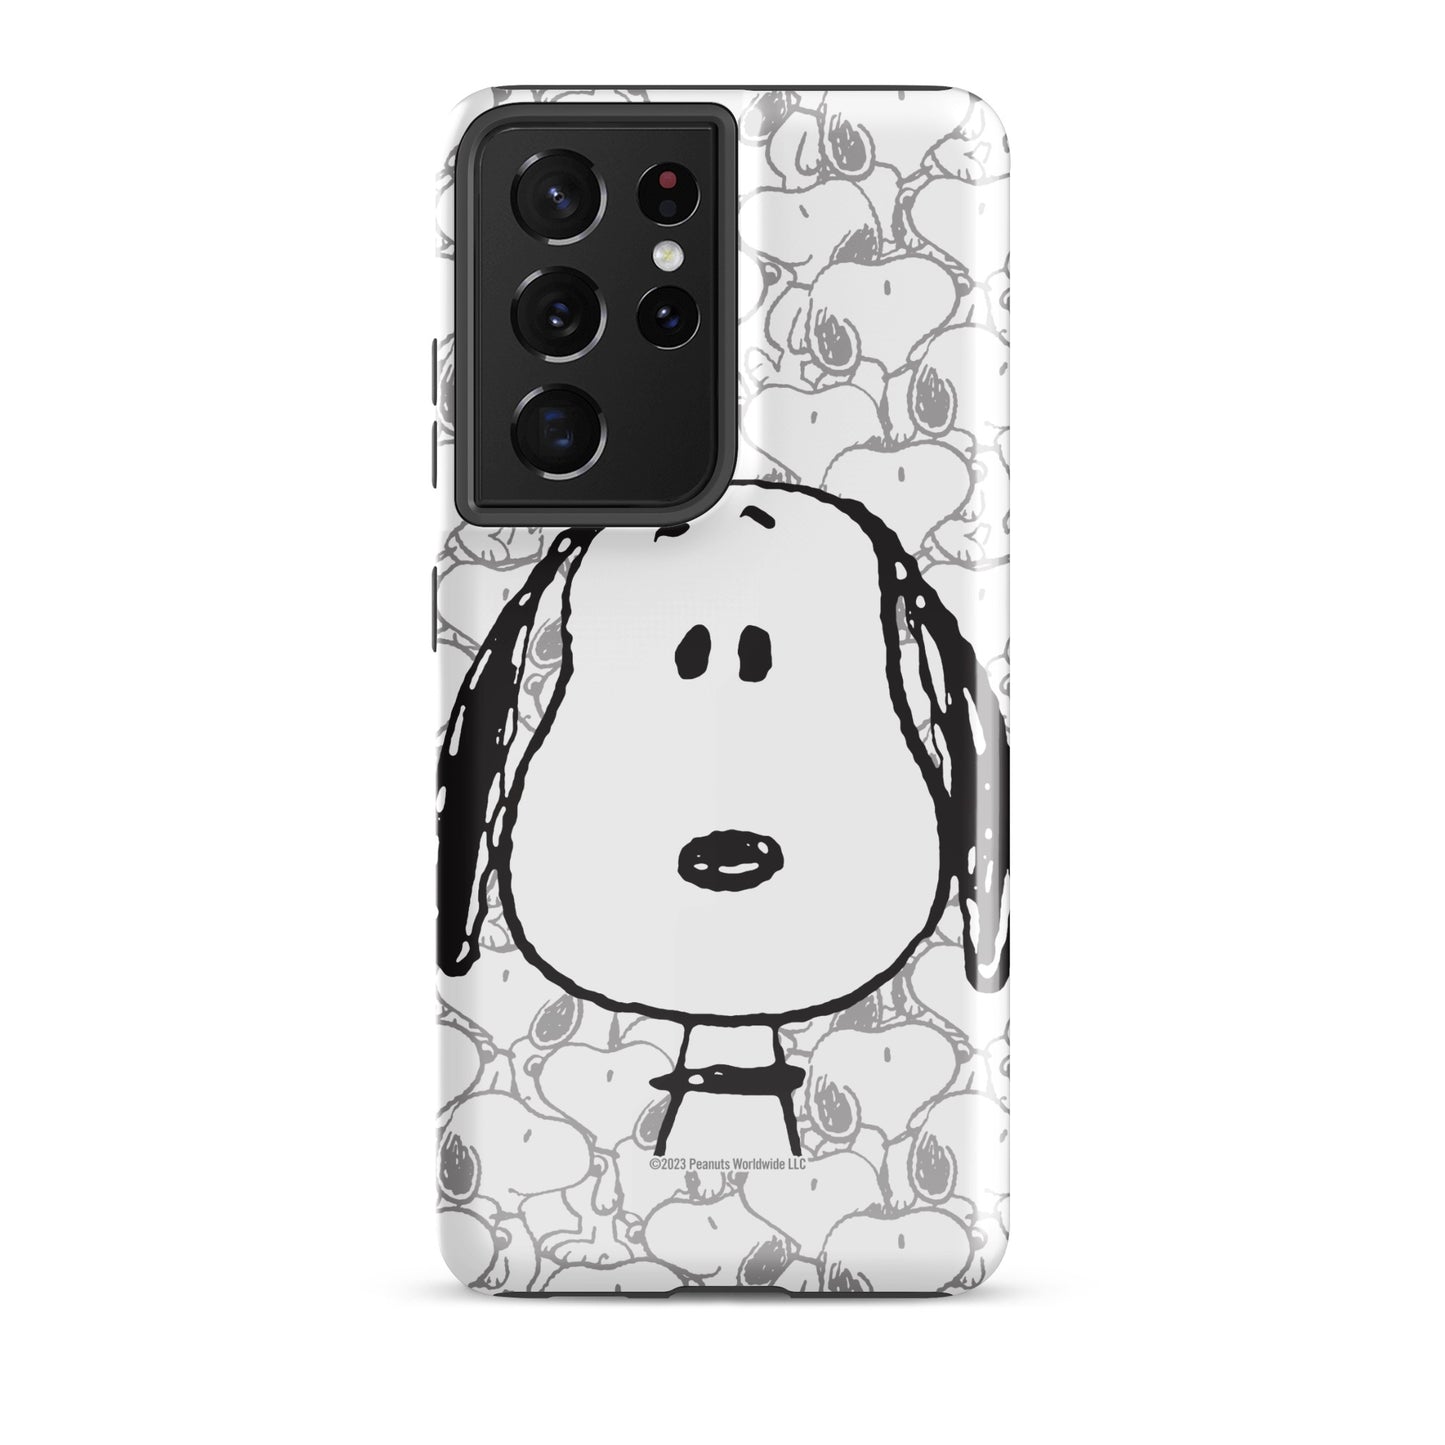 Snoopy Samsung Tough Case